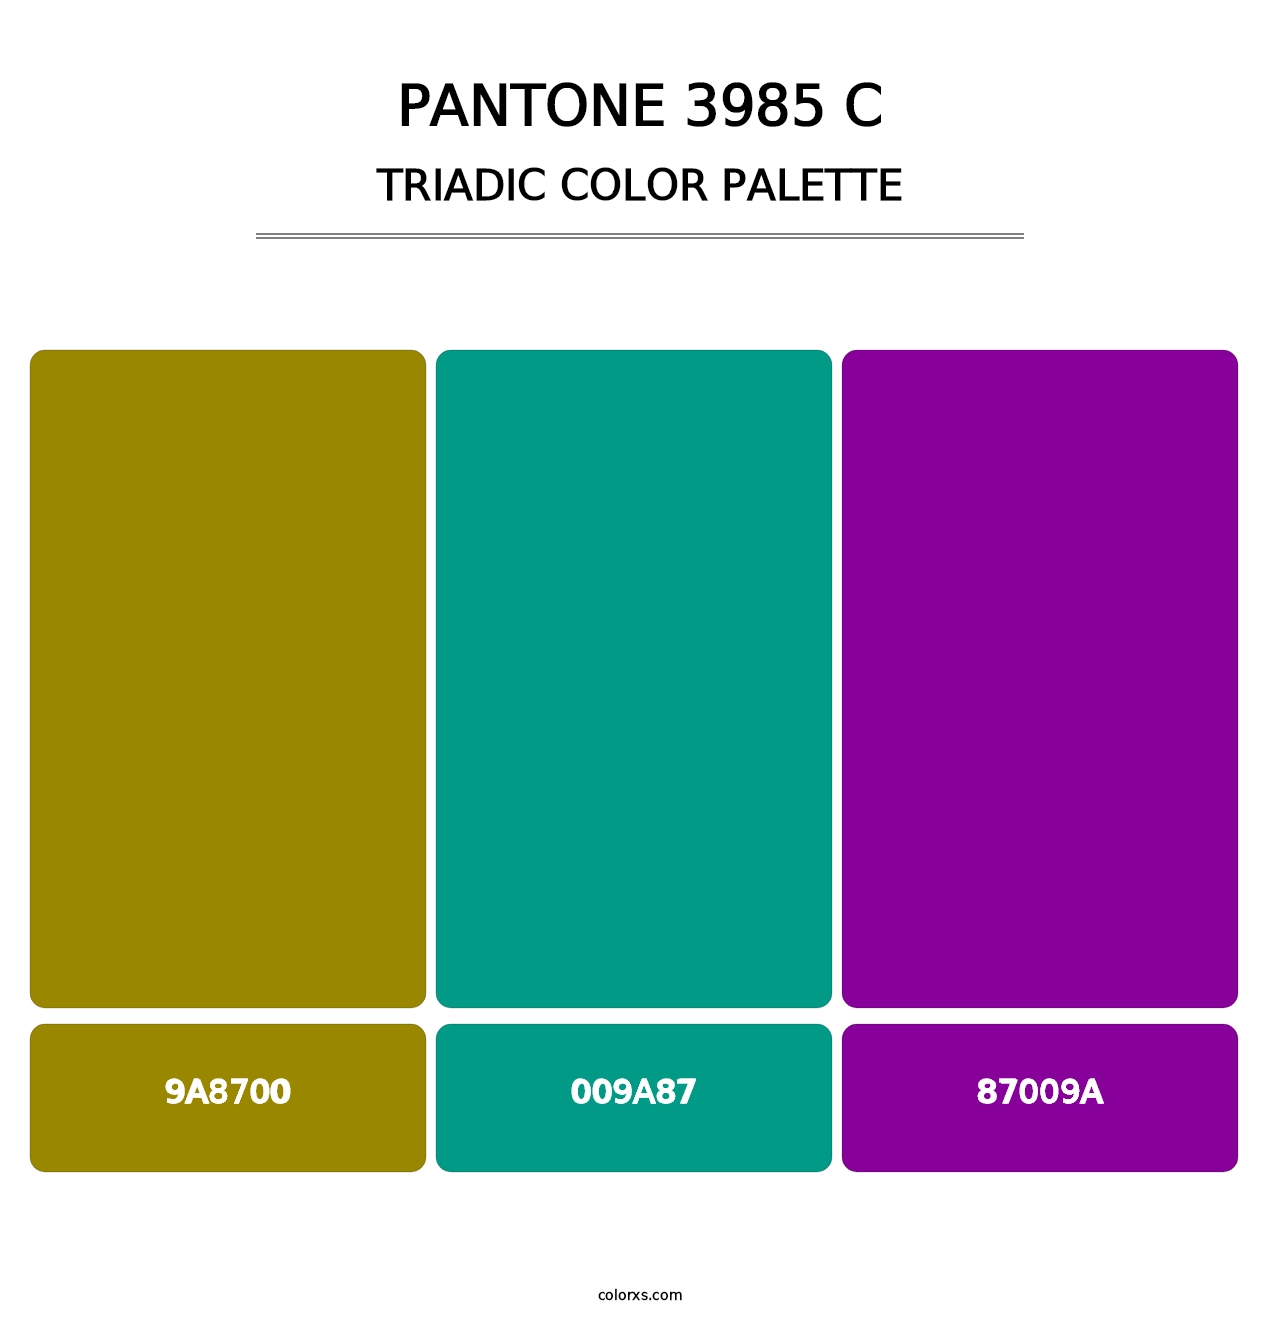 PANTONE 3985 C - Triadic Color Palette